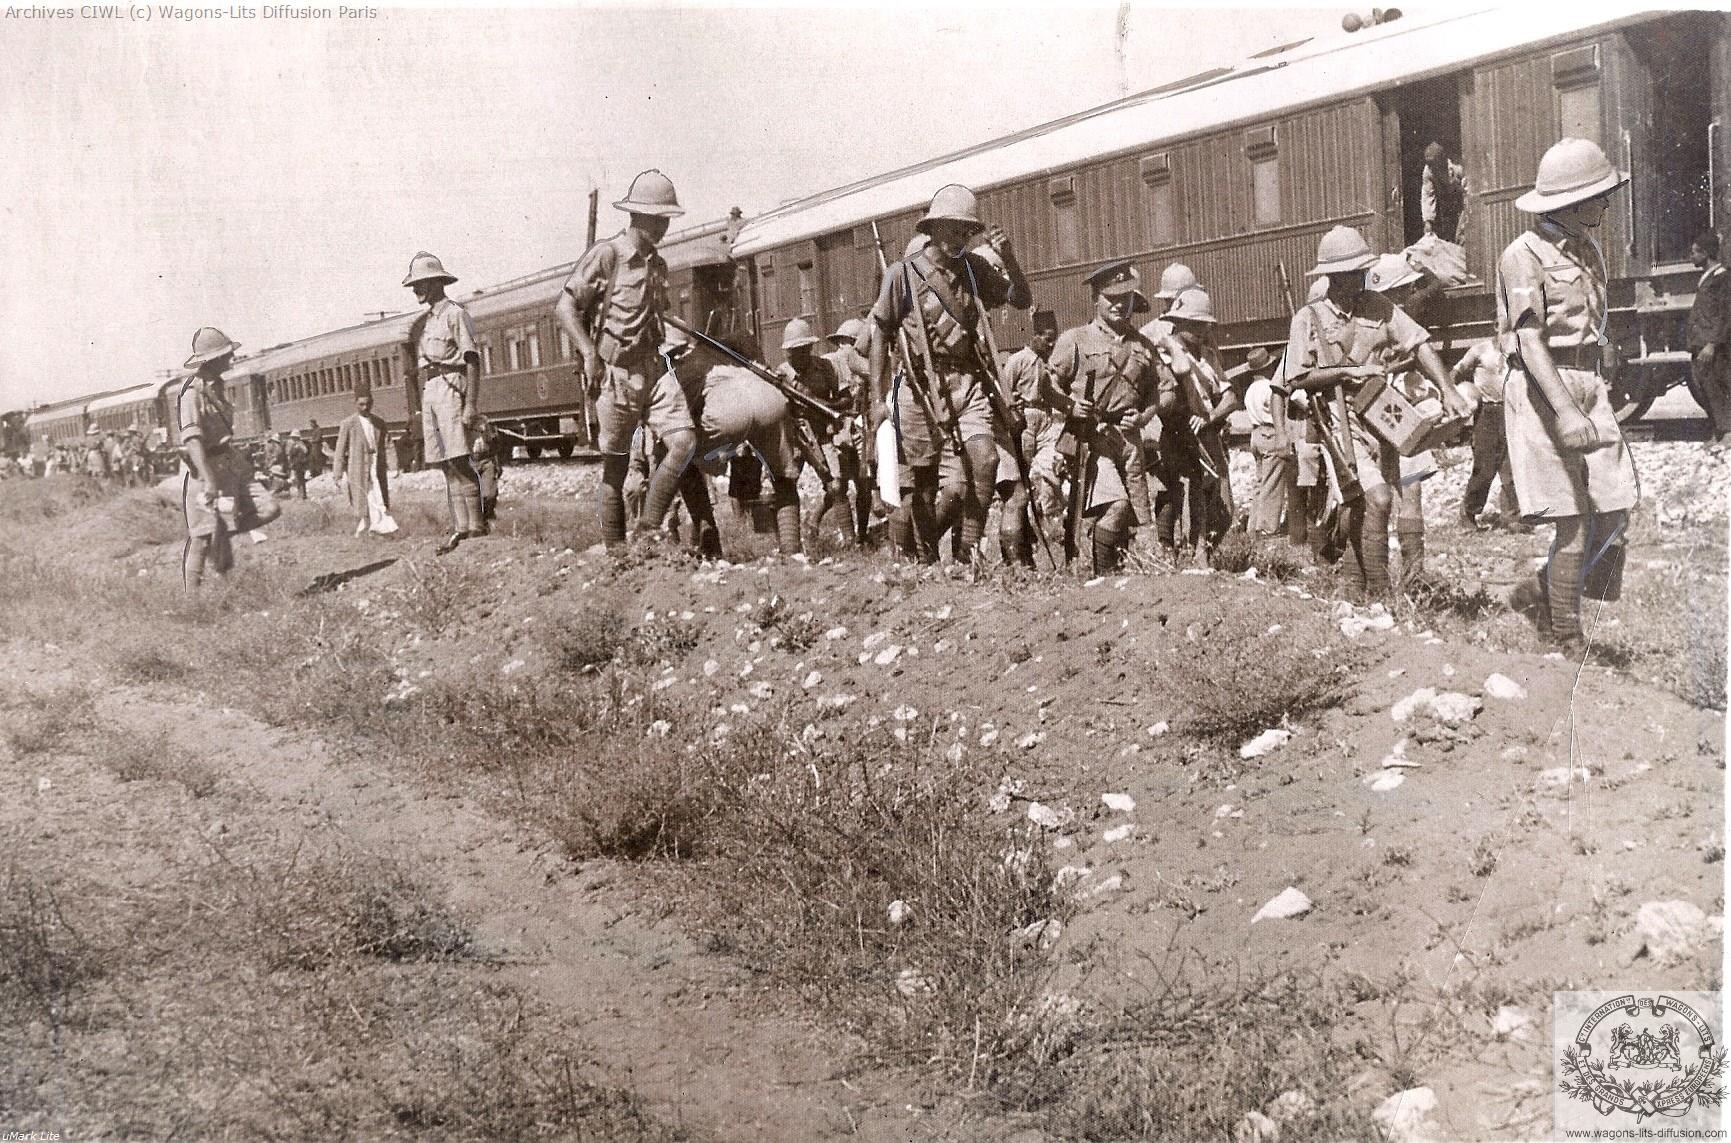 Wl palestine railways lydda junction in 1936 riots in palestine 1